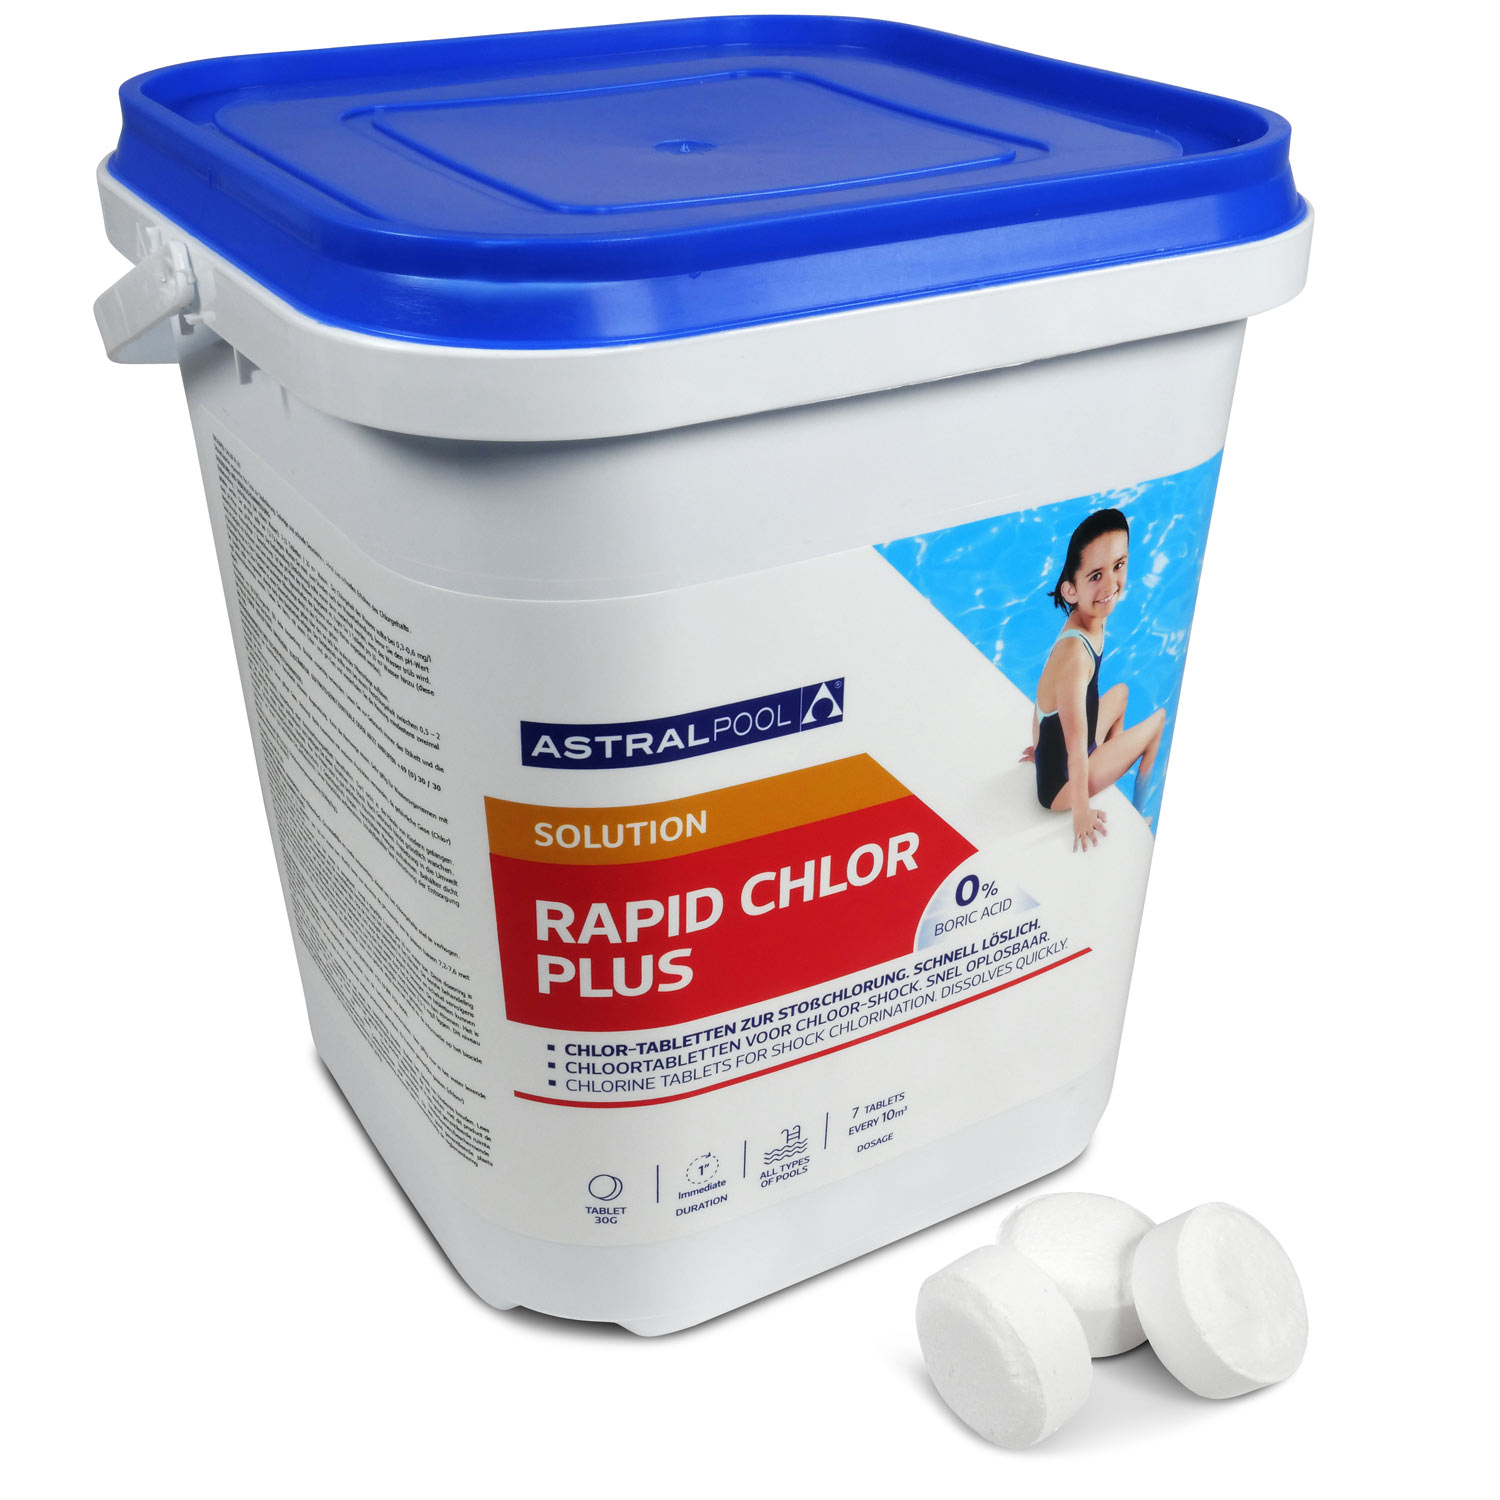 Astralpool Rapid Chlor Plus Chlor-Fixtab 30g zur Stoßchlorung, organisch, schnell löslich 5,0 kg